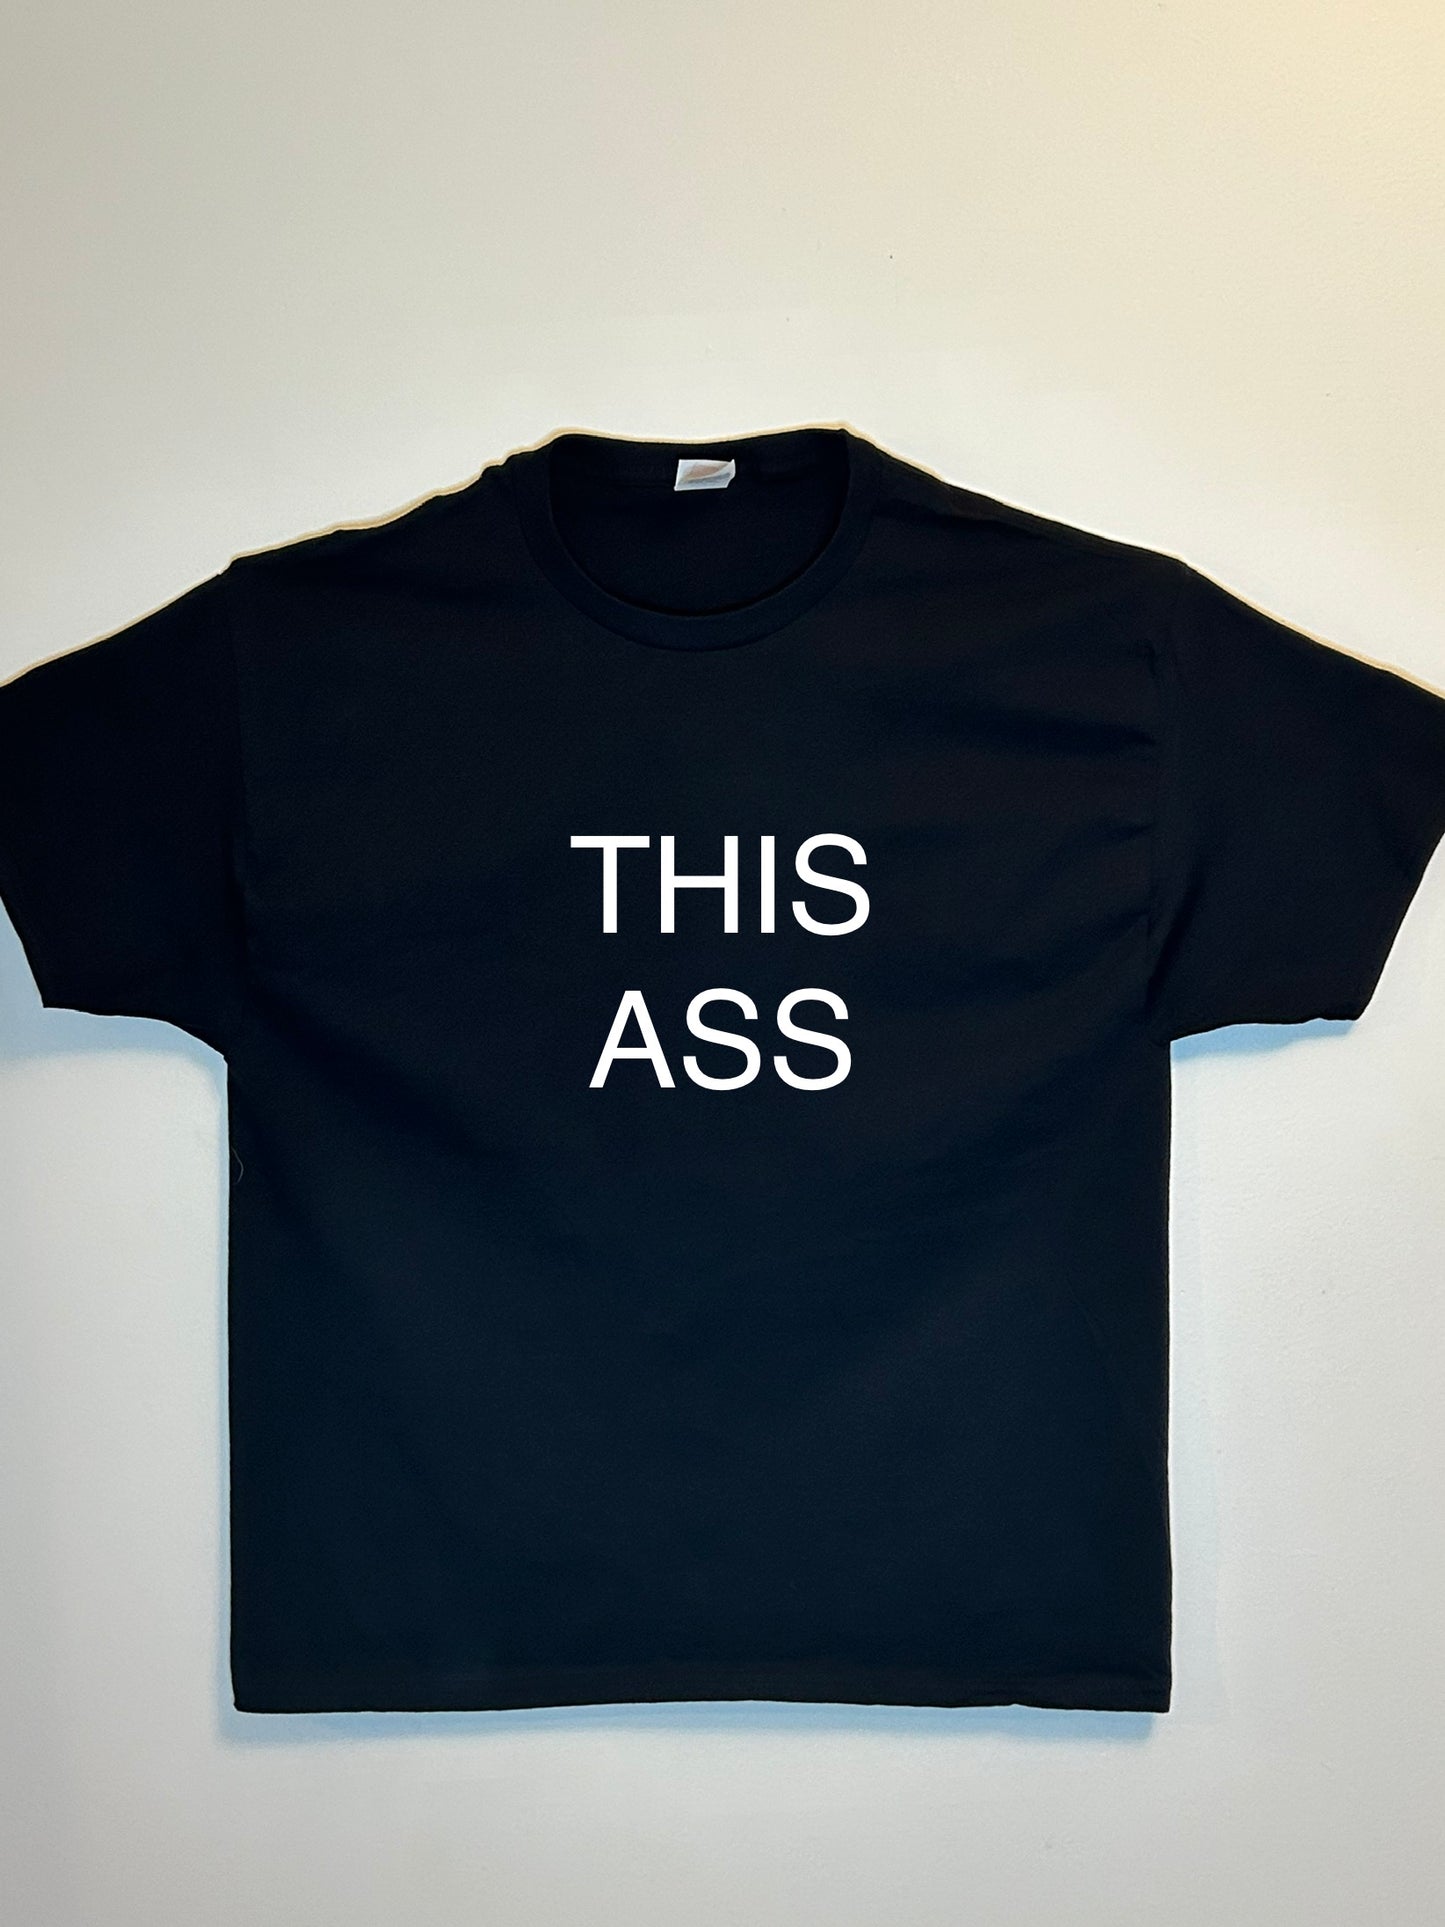 Ass shirt